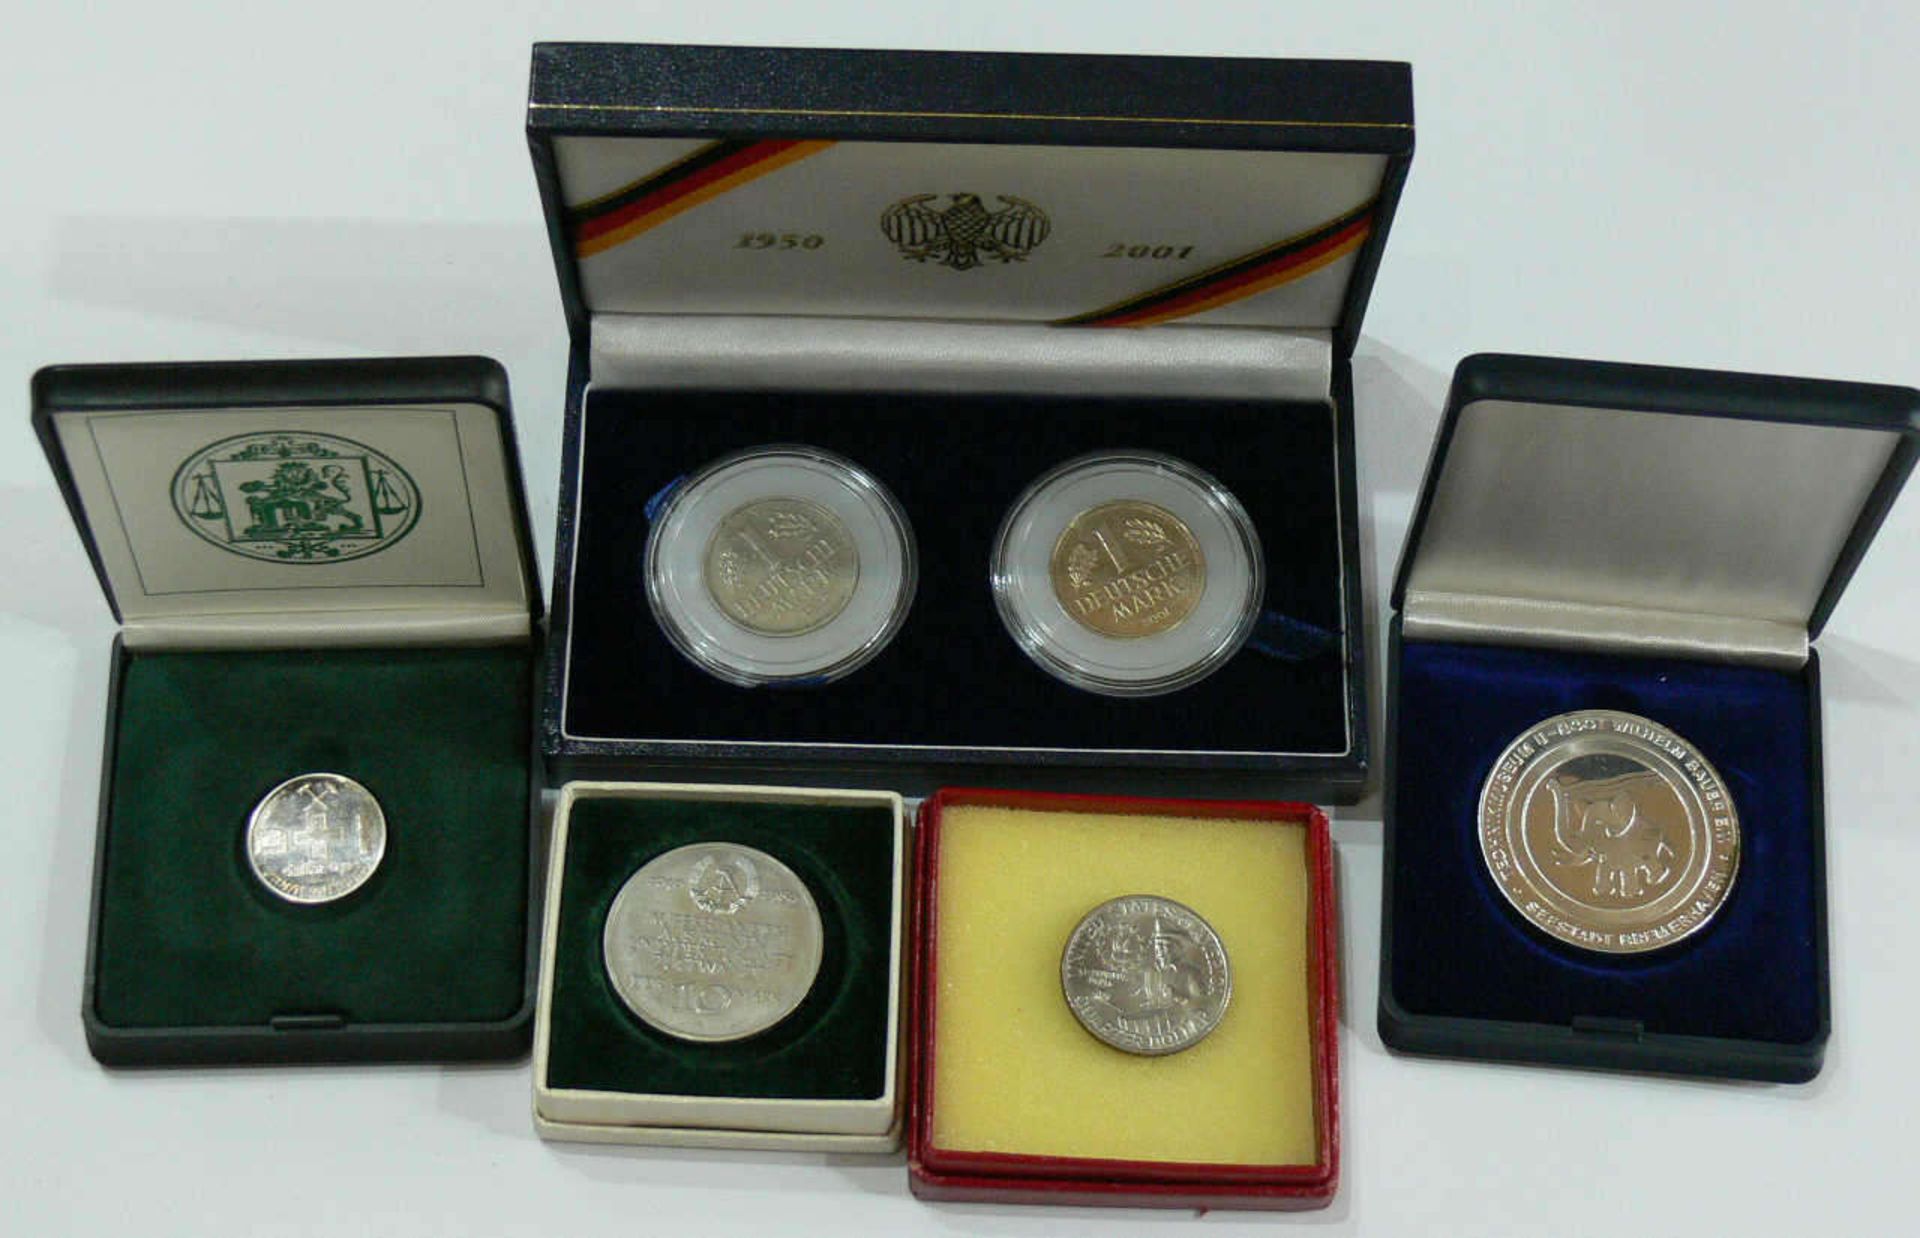 Lot Münzen und Medaillen, bestehend aus: Medaille U 2540 "Wilhelm Bauer", Silber, DDR 10 Mark "40